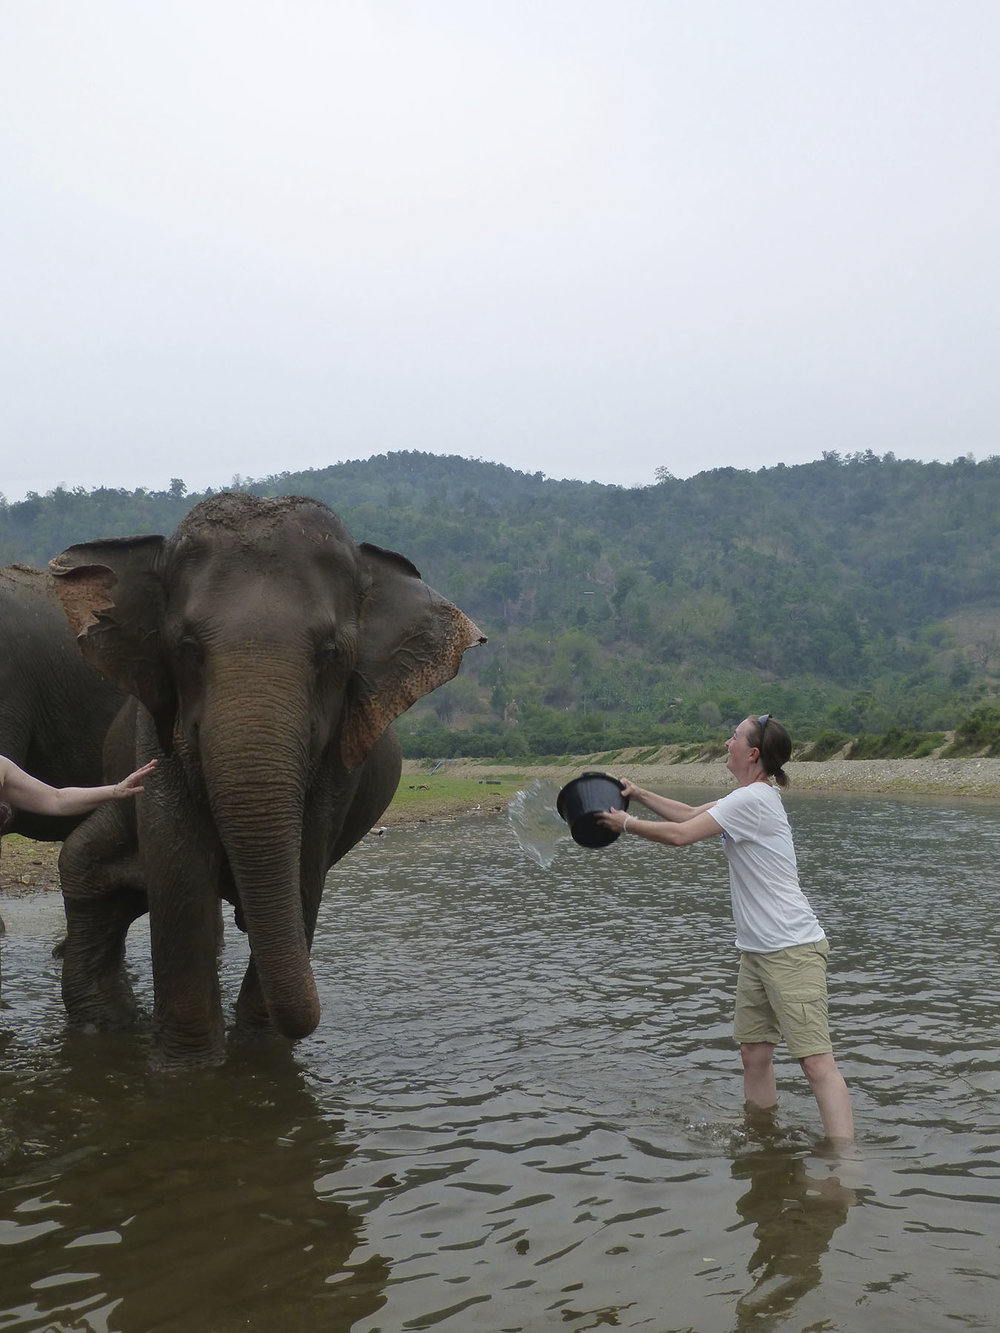 Elephant Bath Time